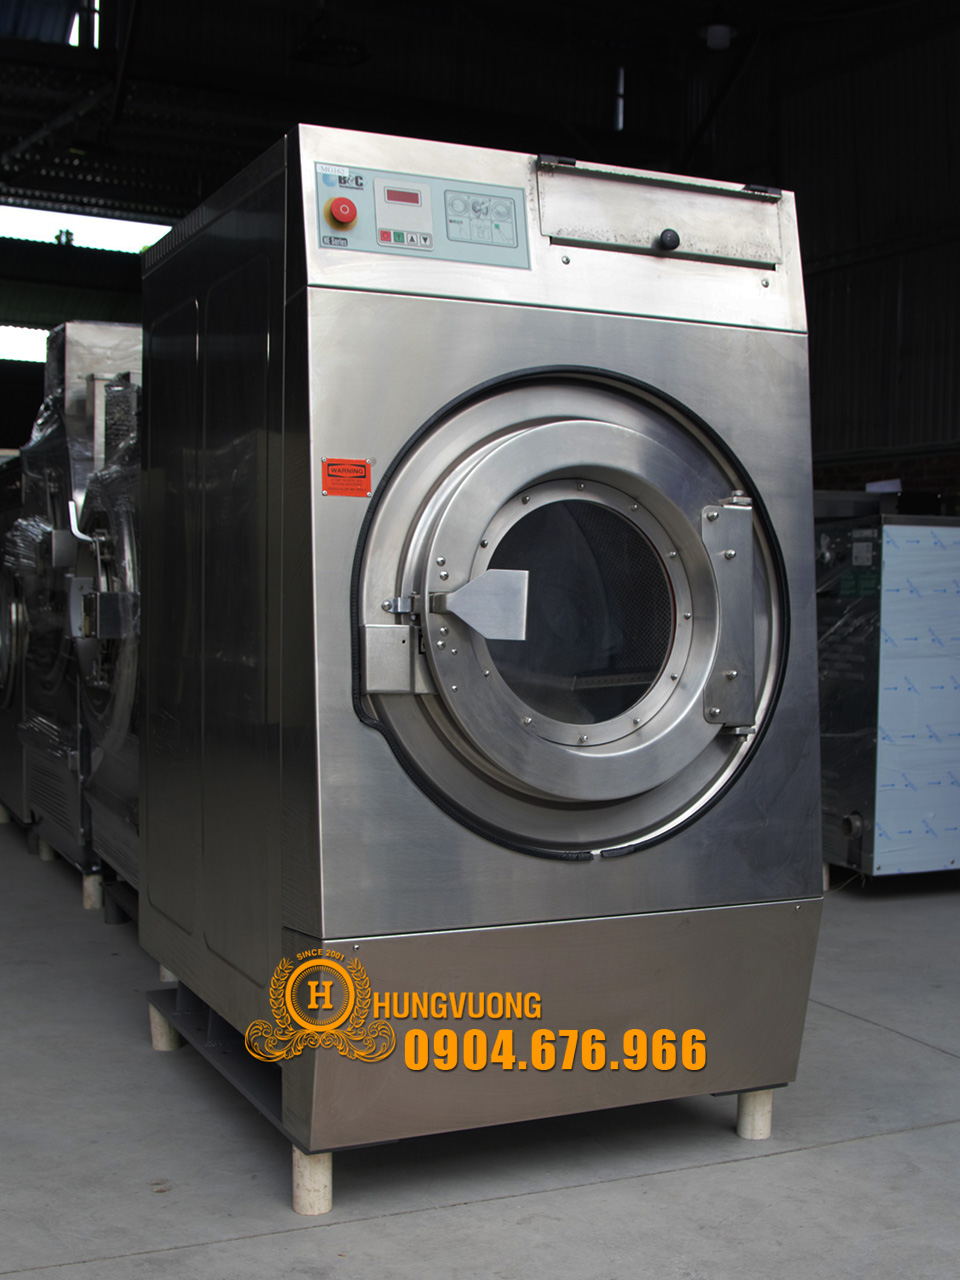 Mặt nghiêng máy giặt công nghiệp B&C 27kg, chân cố định, biến tần, Mỹ